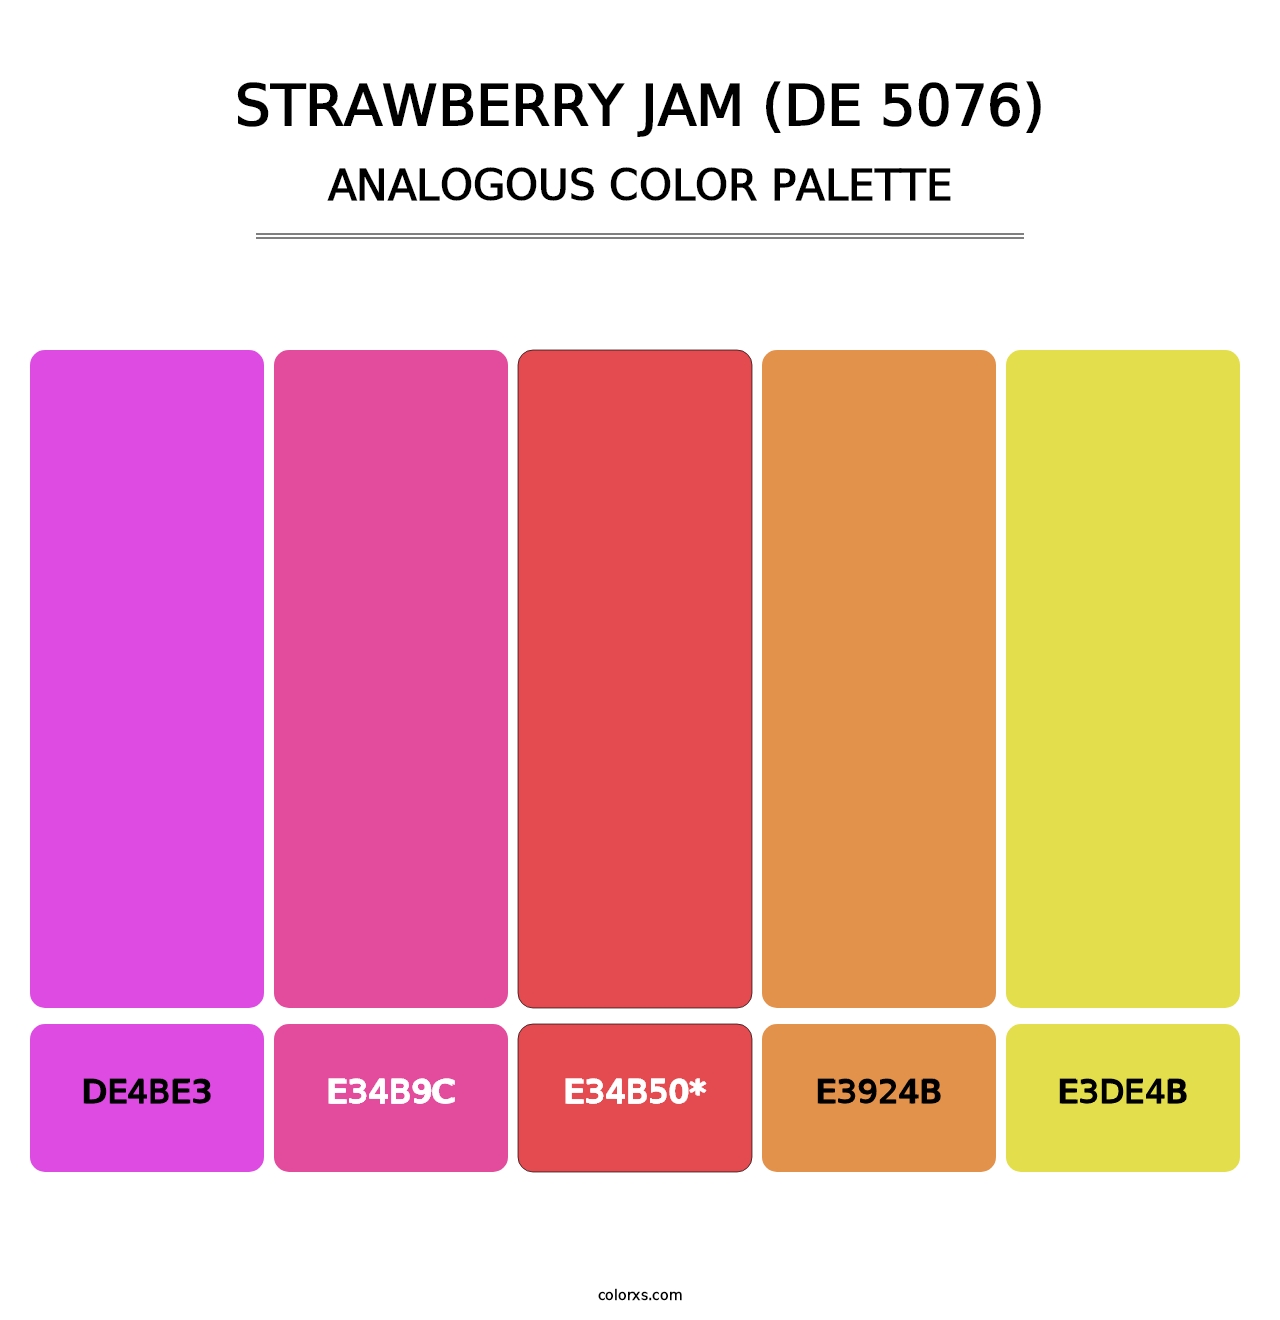 Strawberry Jam (DE 5076) - Analogous Color Palette